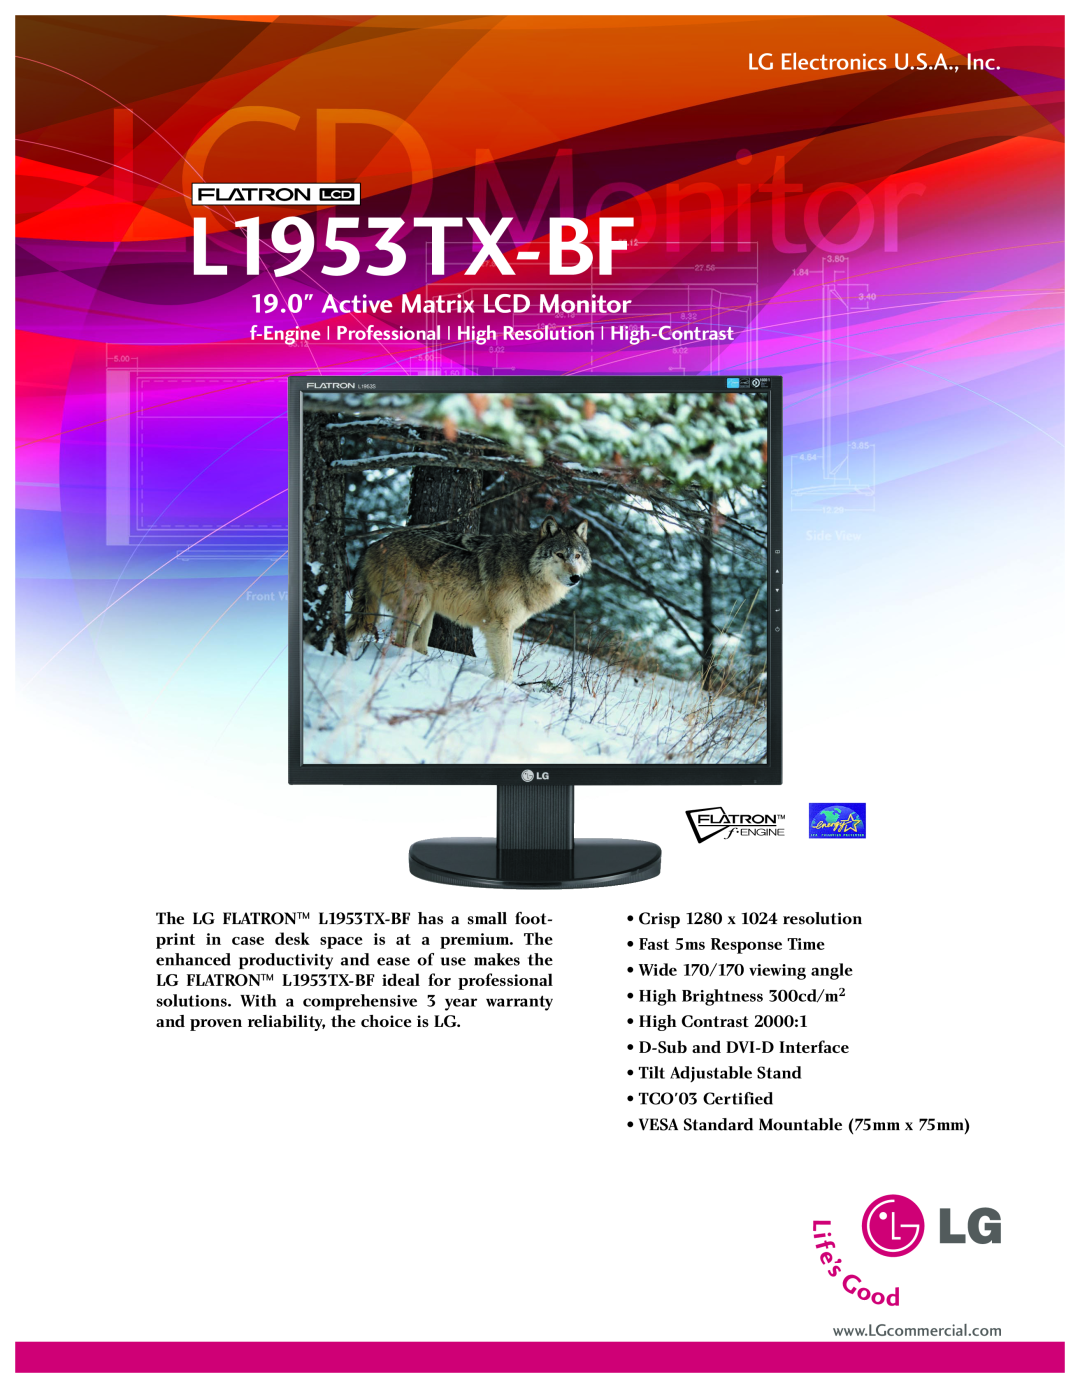 LG Electronics warranty L1953TX-BF, Active Matrix LCD Monitor, LG Electronics U.S.A., Inc 